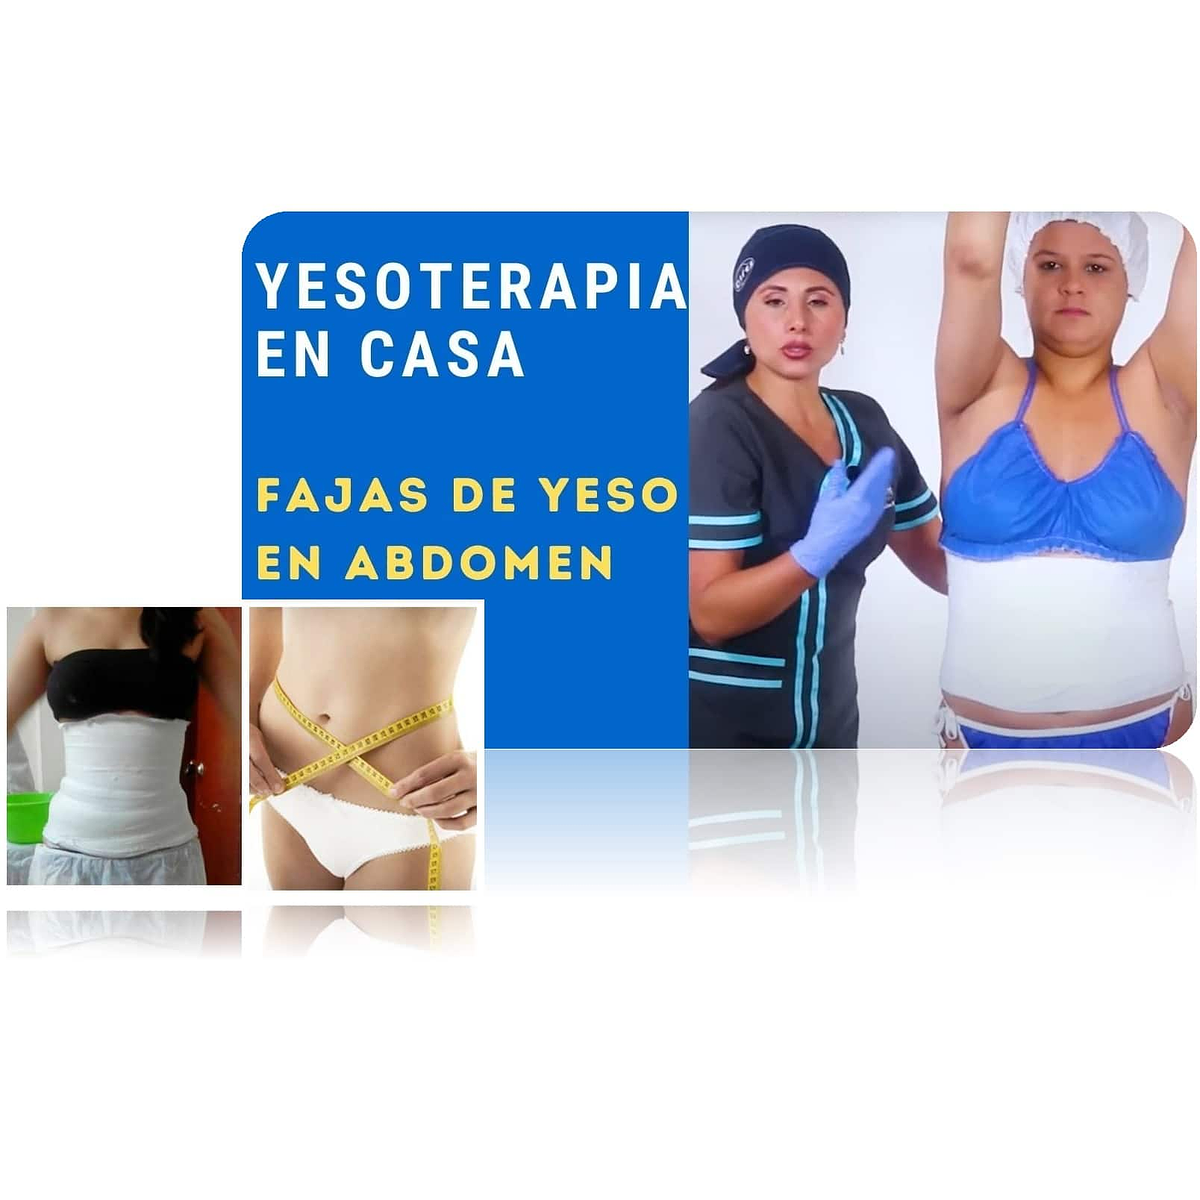 Faja de yeso reductora que funciona abdomen reduce medida... | Oropiel